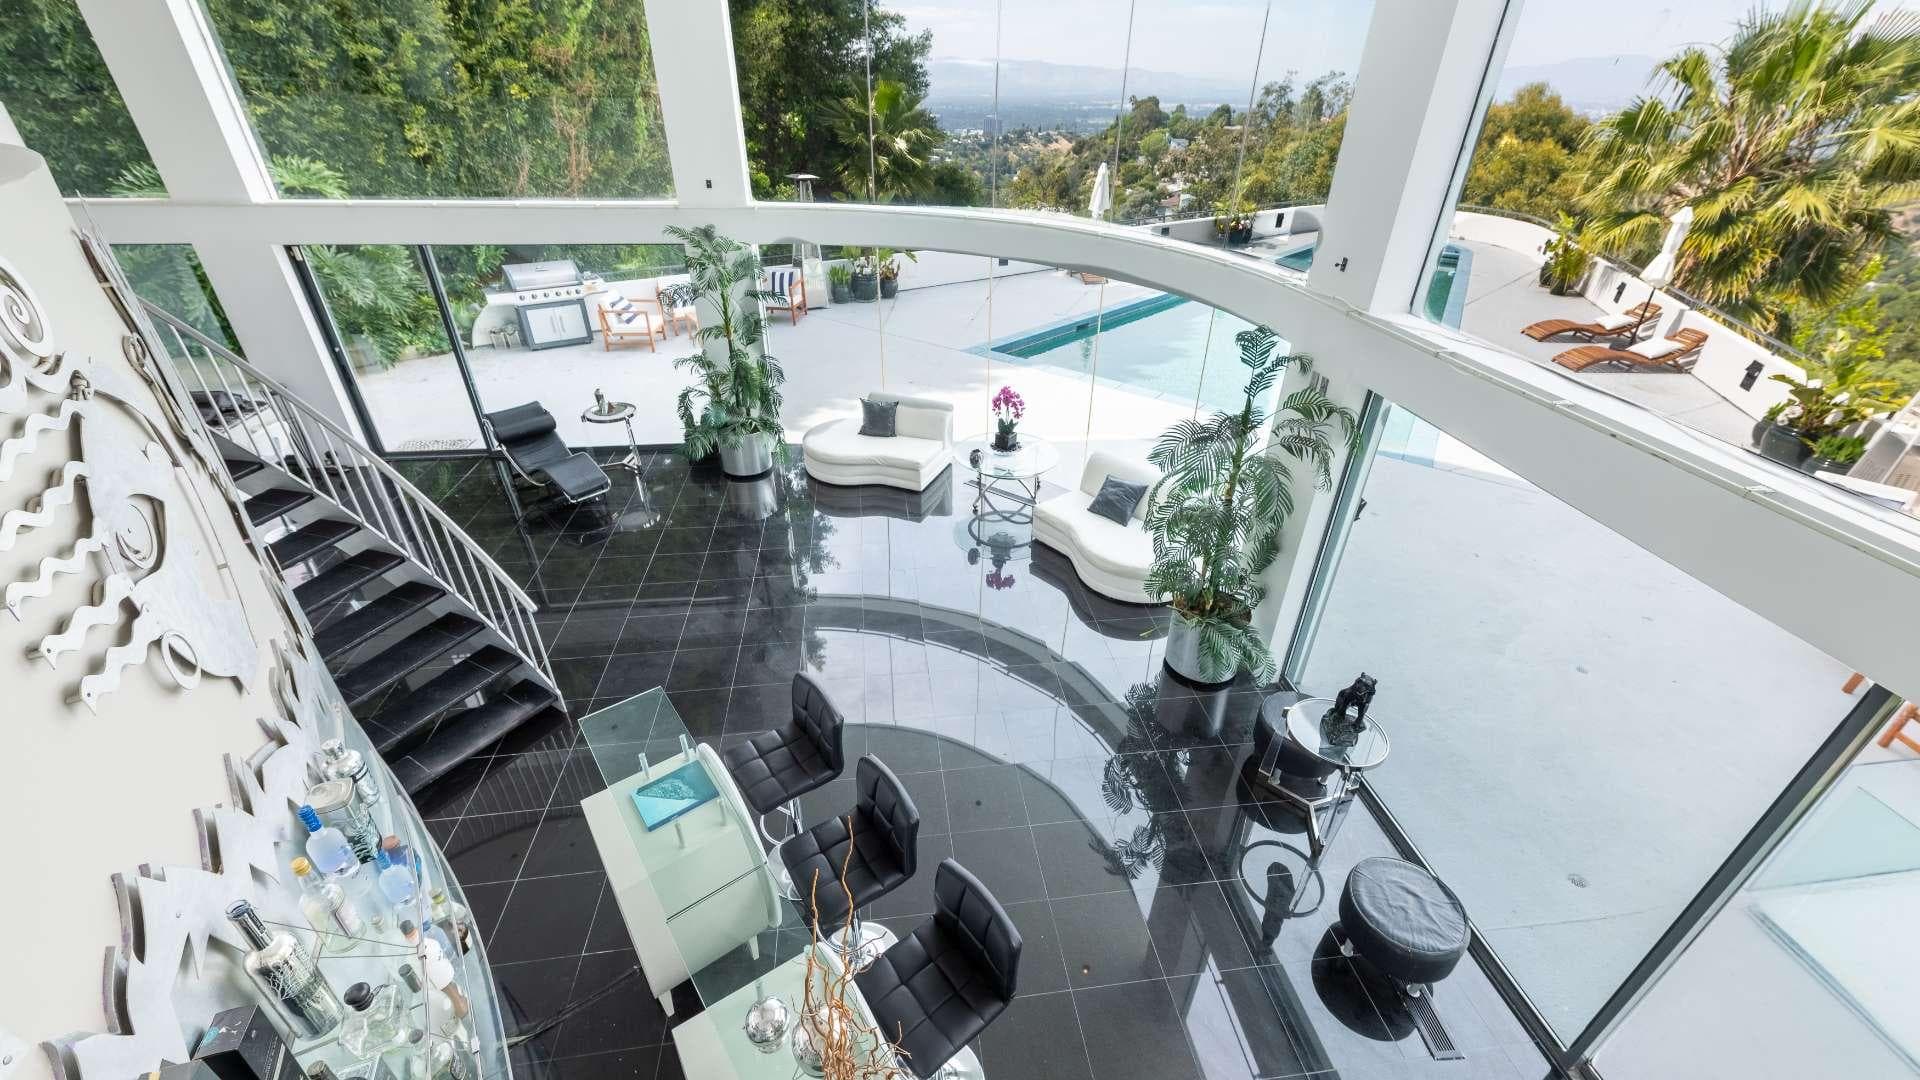 5 Bedroom Villa For Sale Los Angeles Lp13605 21c6fd1950e0ba00.jpg